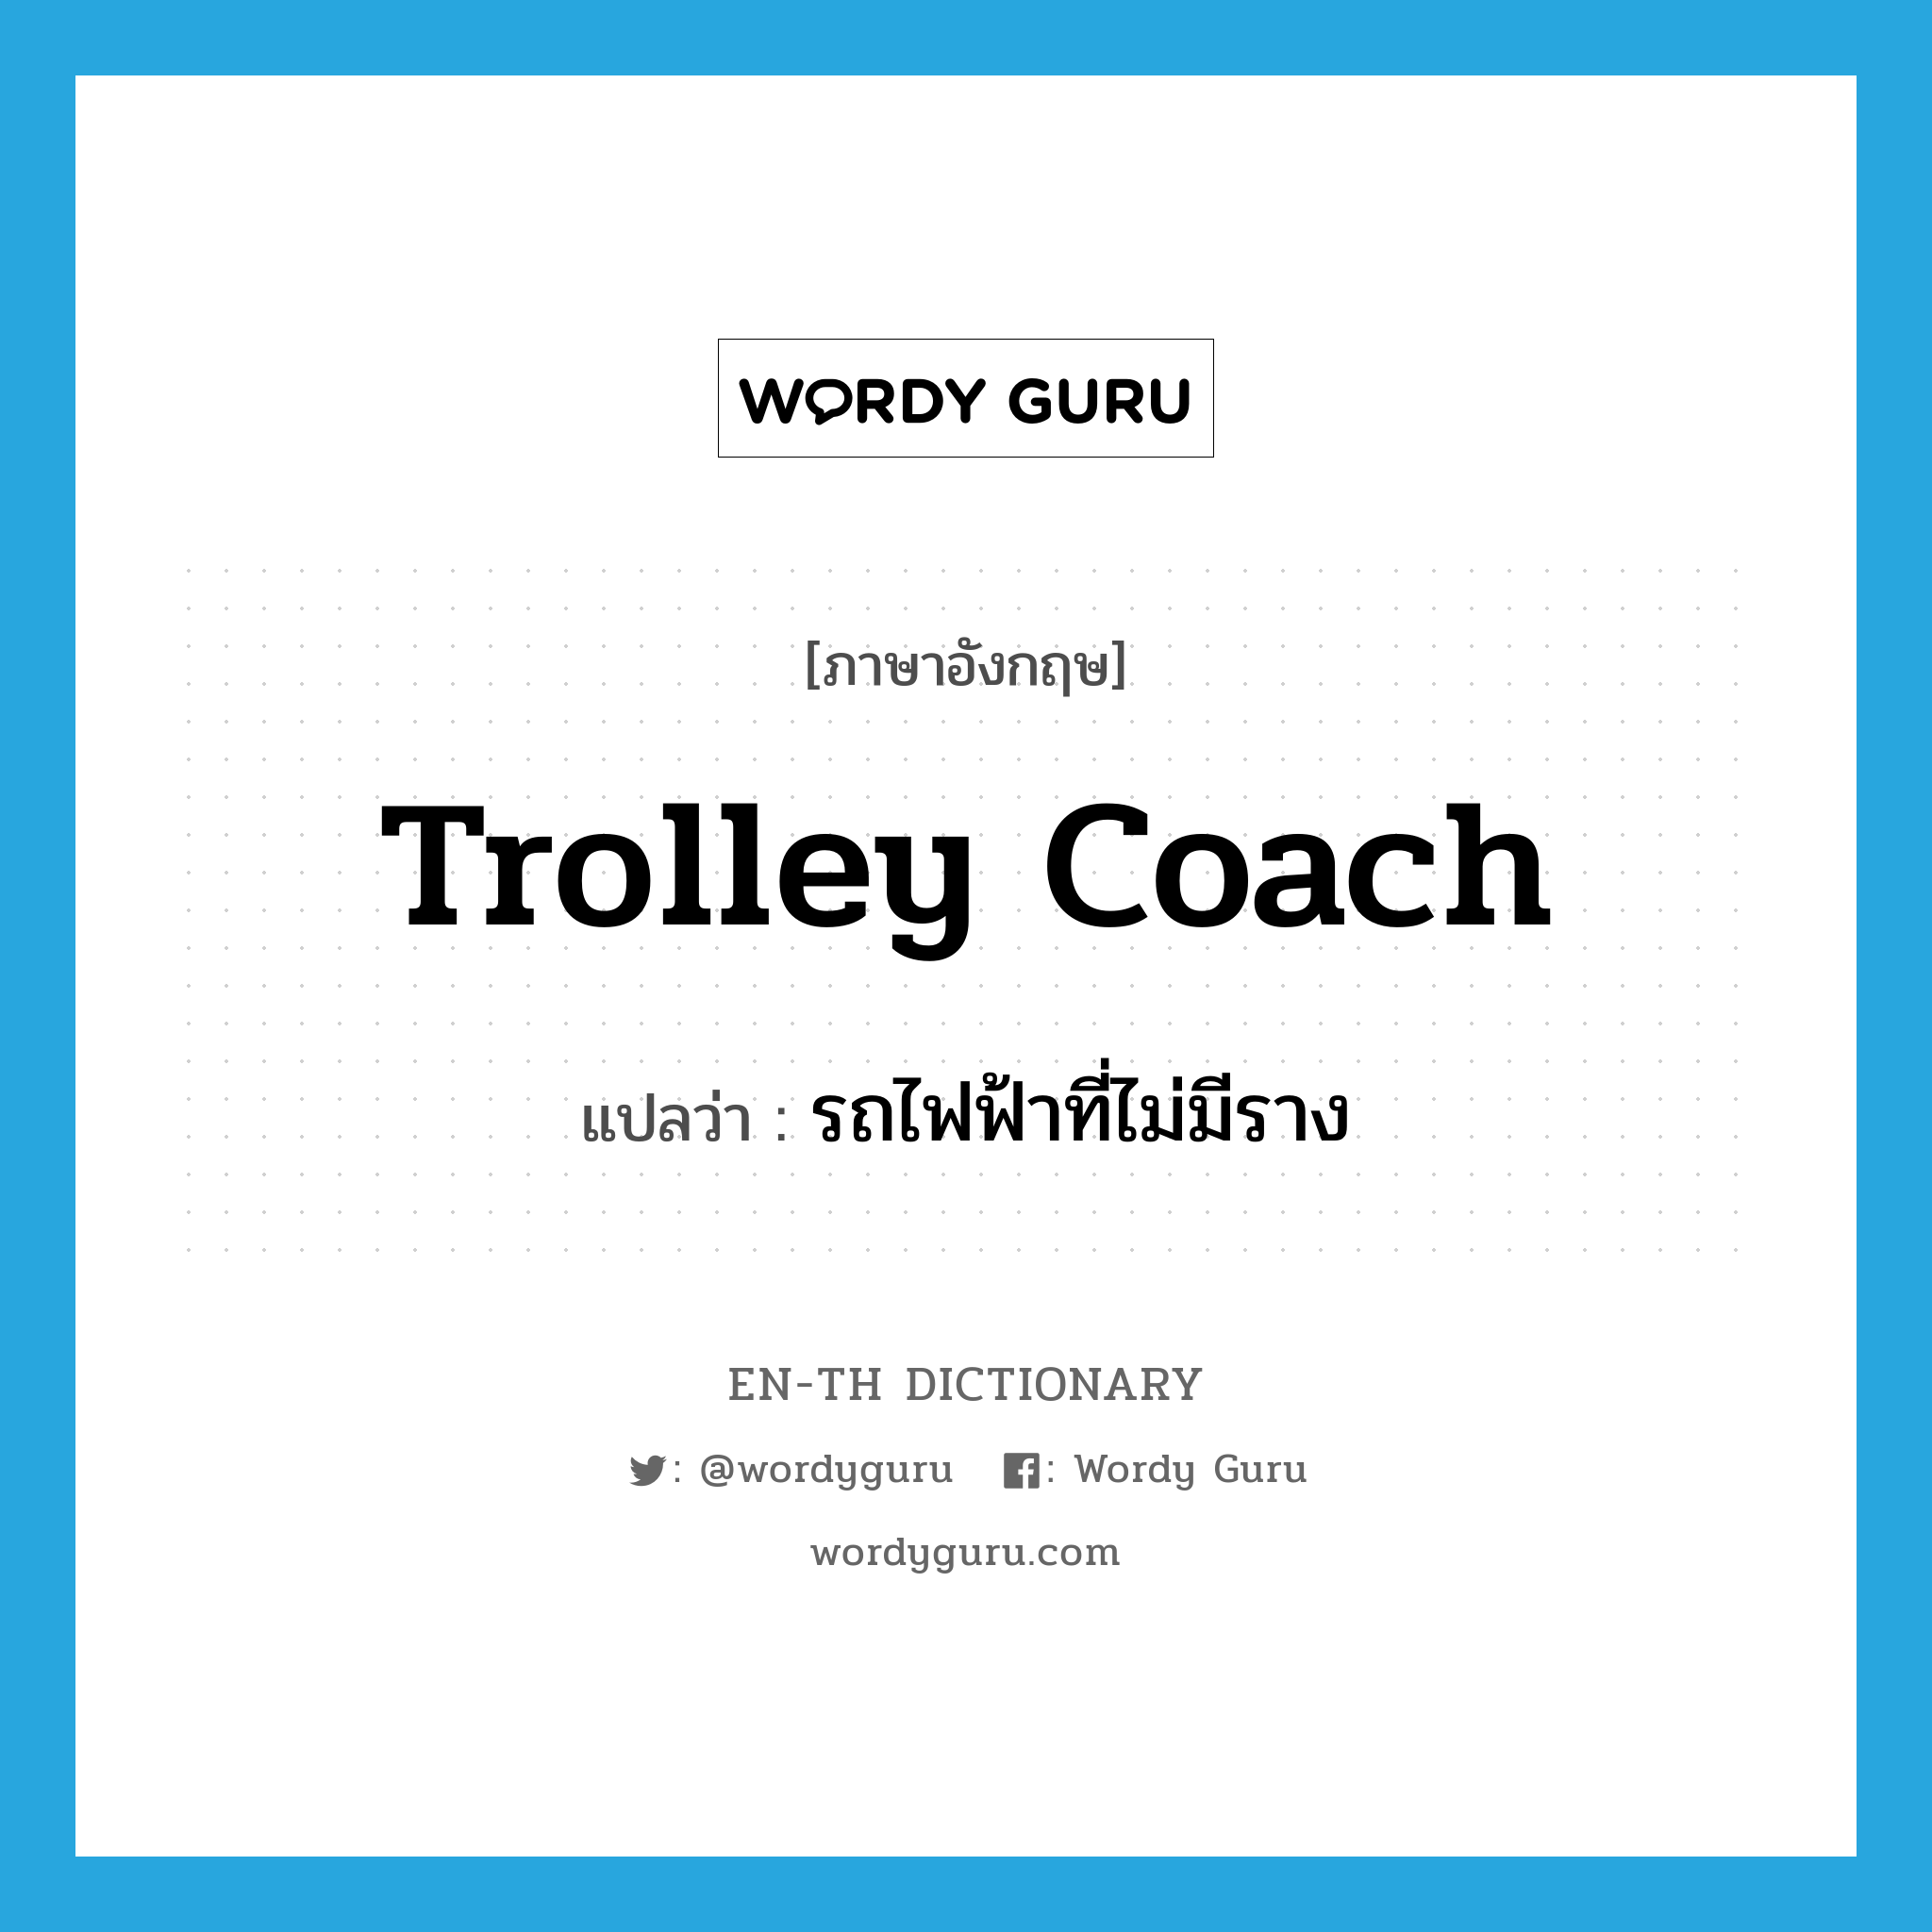 trolley coach แปลว่า?, คำศัพท์ภาษาอังกฤษ trolley coach แปลว่า รถไฟฟ้าที่ไม่มีราง ประเภท N หมวด N